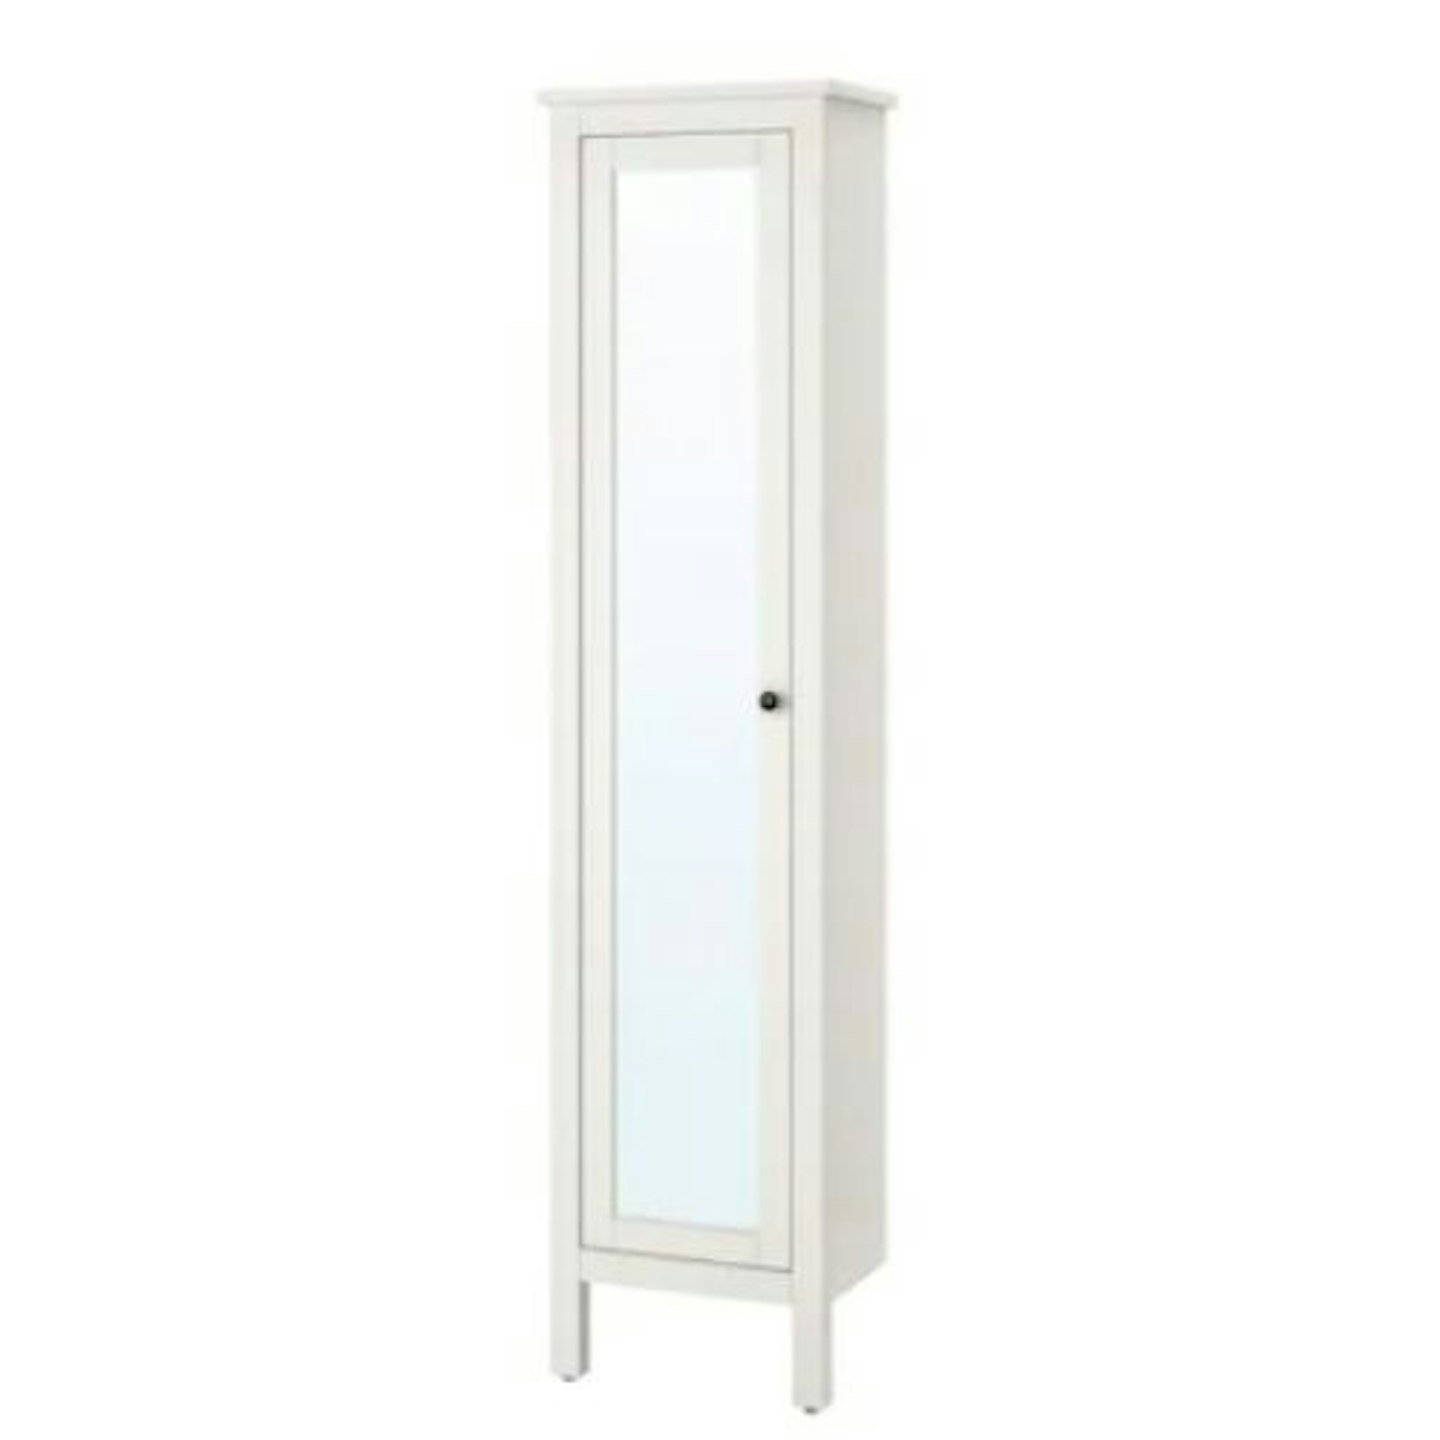 Hemnes Cabinet with Mirrored Door